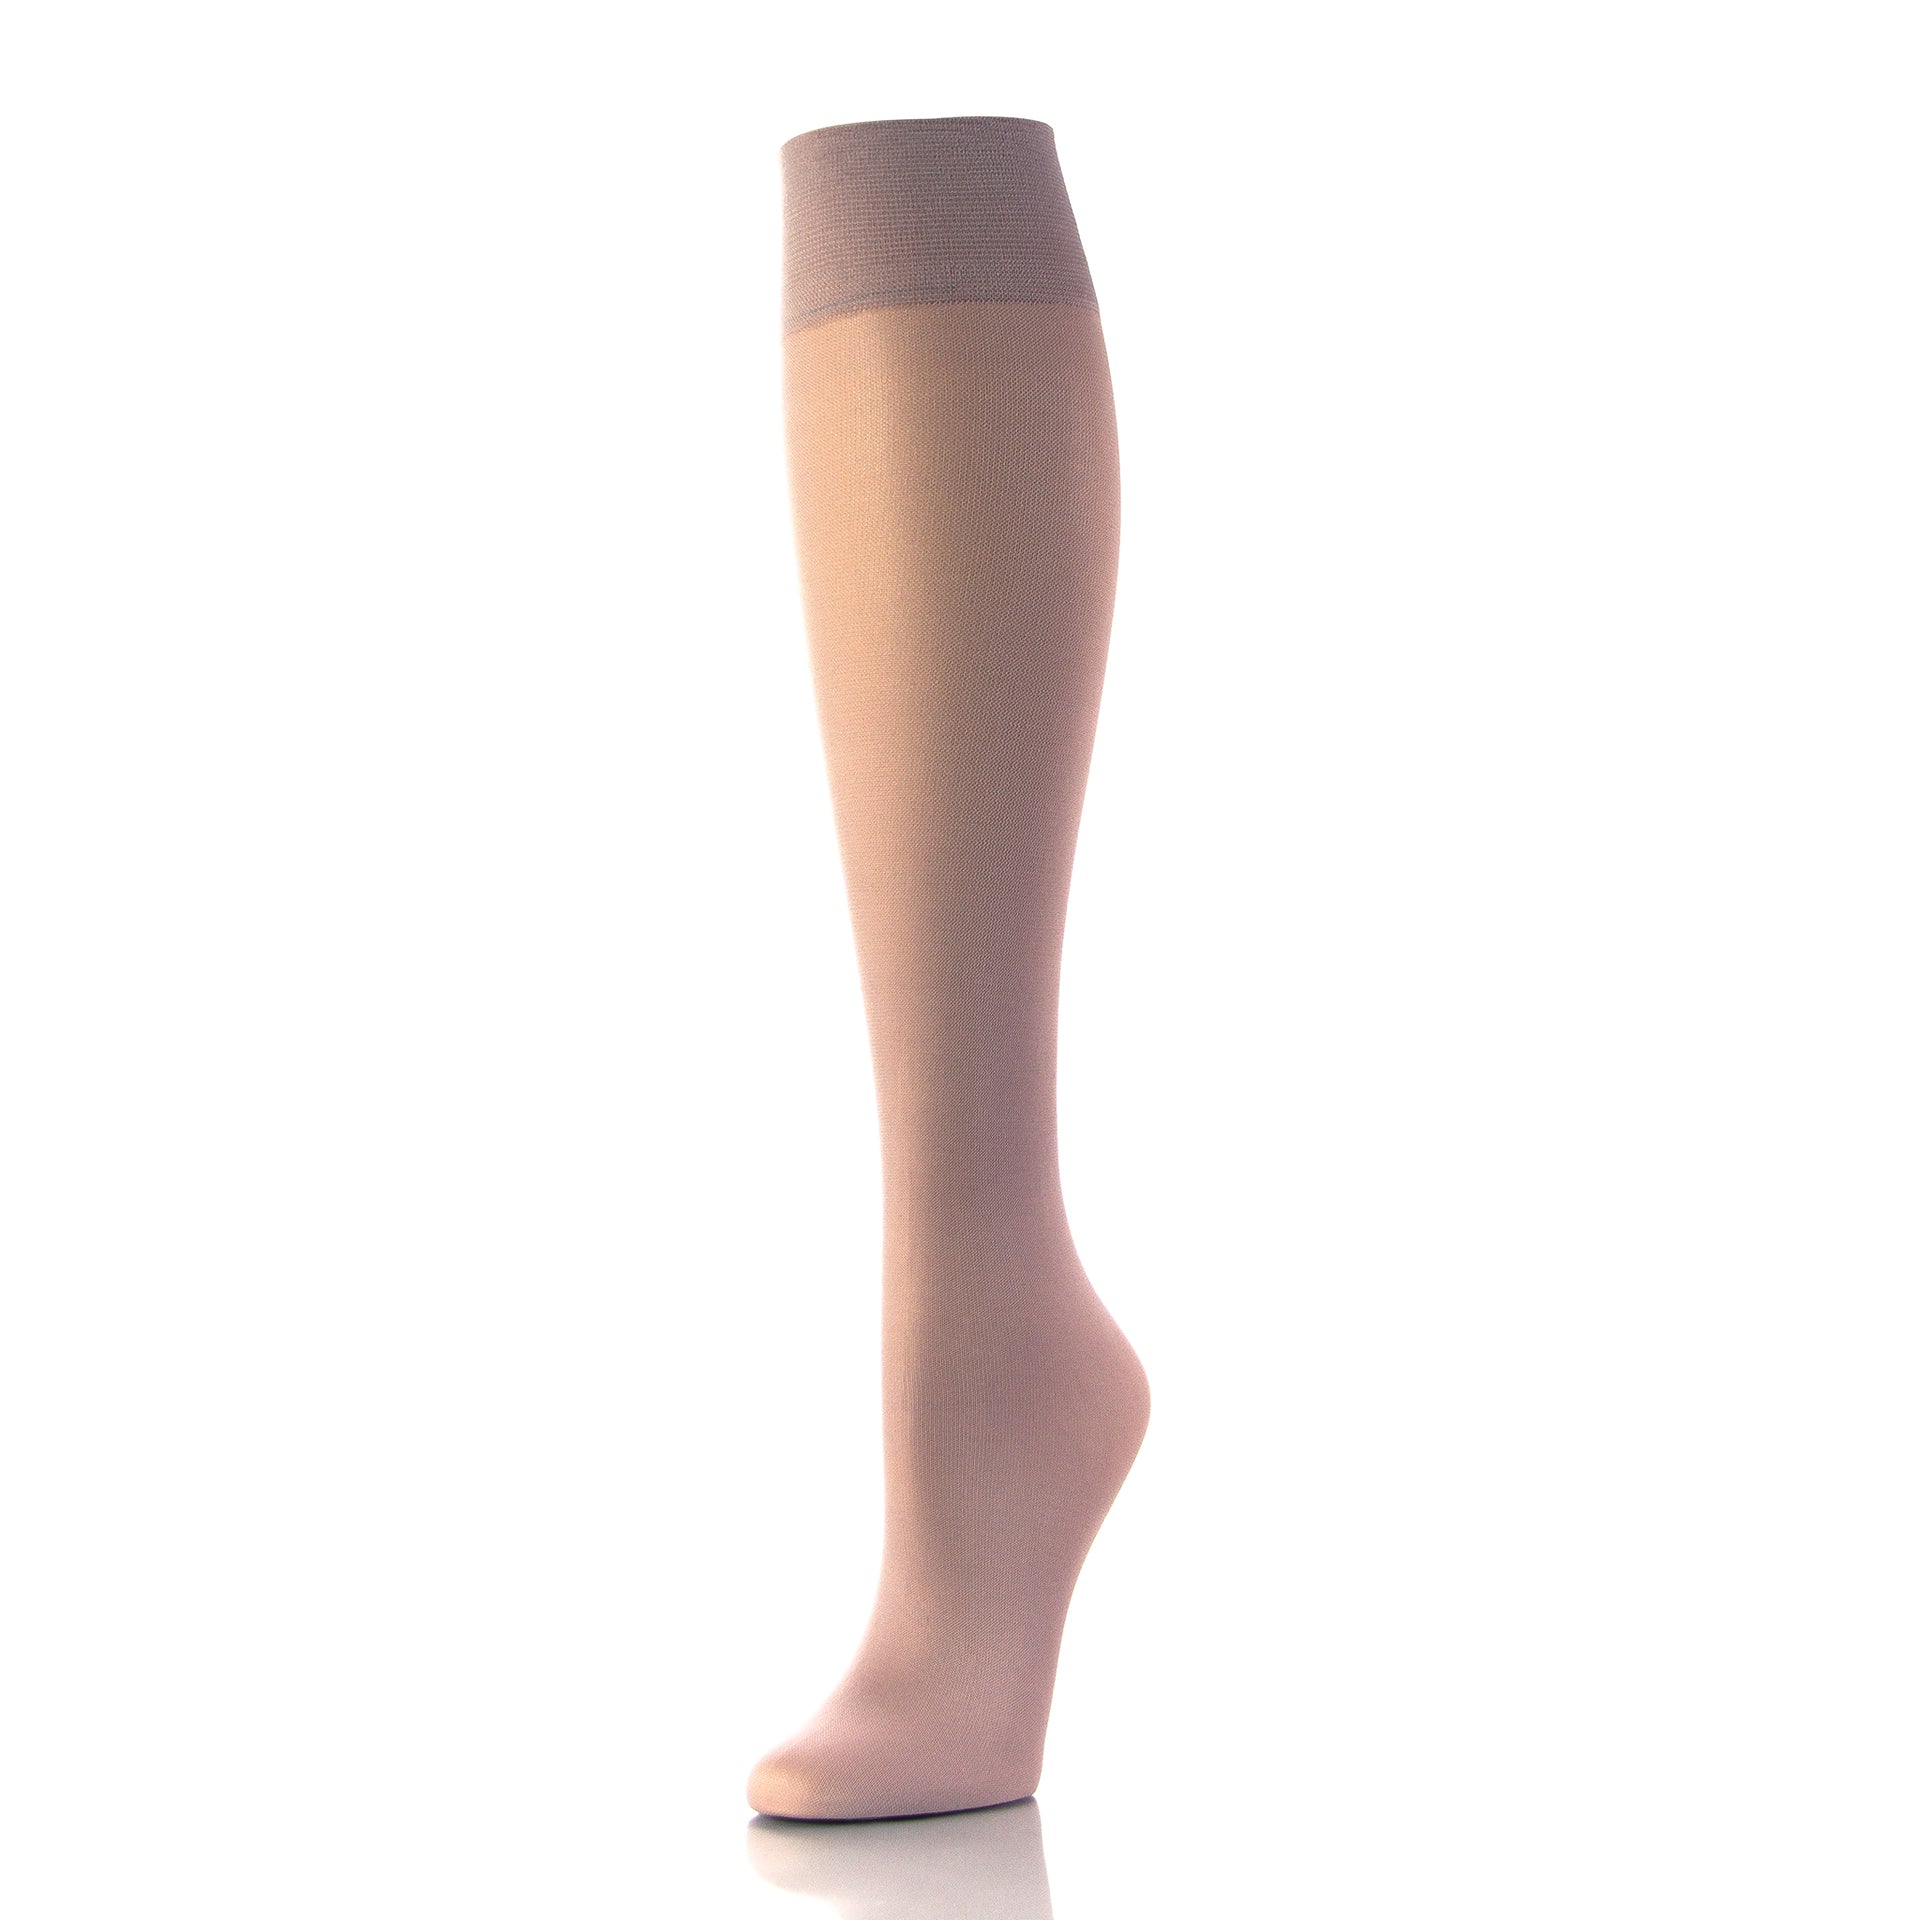 Bas de contention pour femme, couleur peau naturelle, vue complète de l'intérieur de la jambe - Softmedi